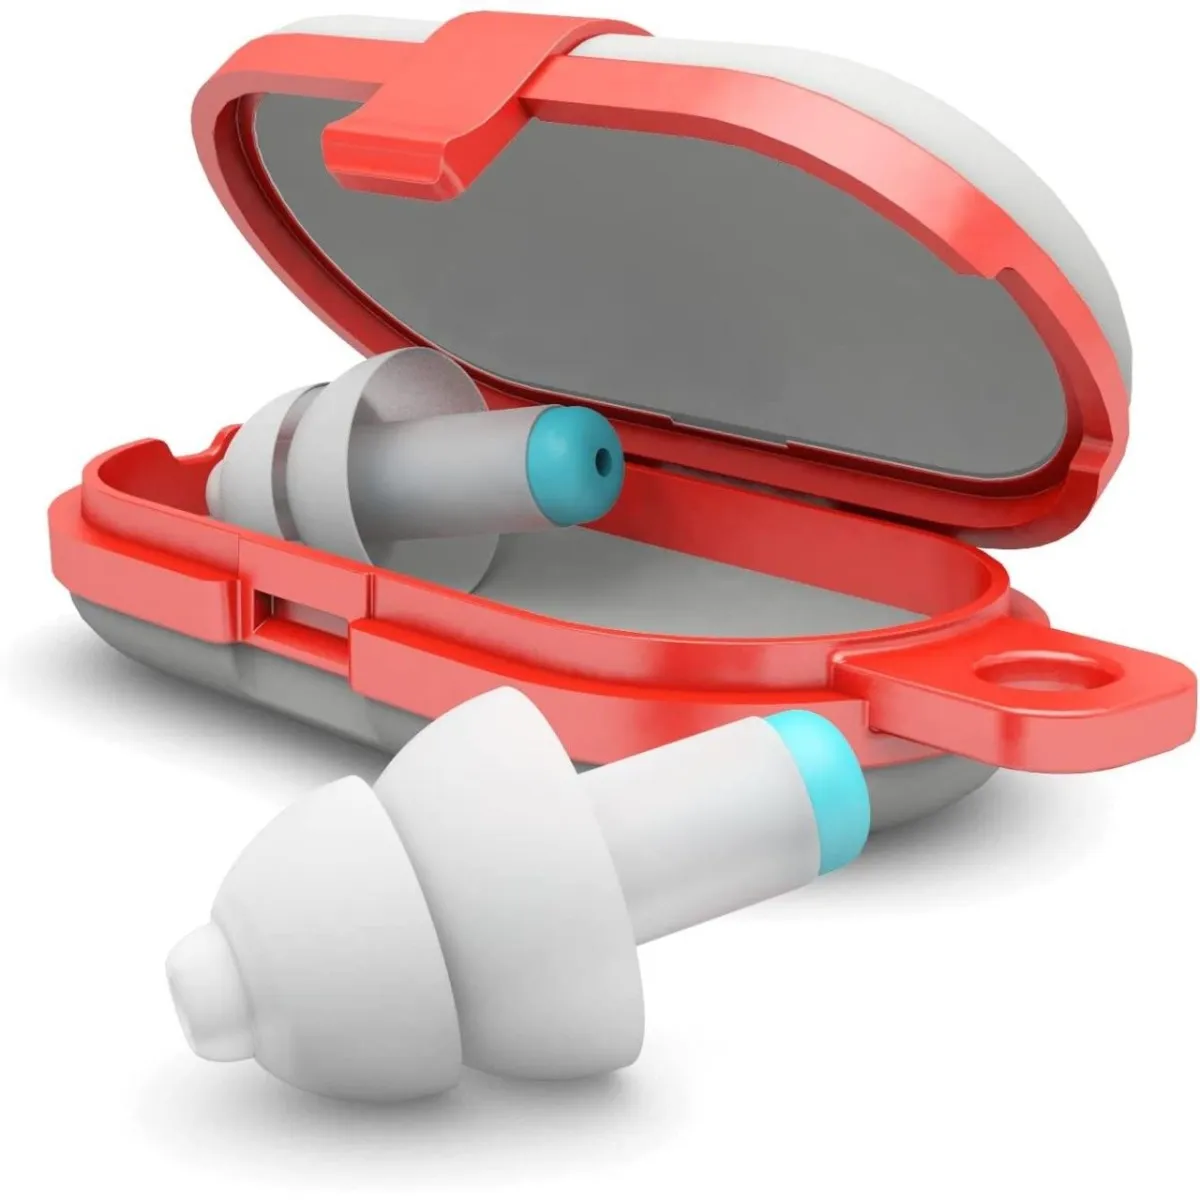 Dopuri de urechi antifonice reutilizabile pentru copii de la 3-12 ani SNR 25 Pluggies Kids ALP23541, 1 bucata, Alpine 